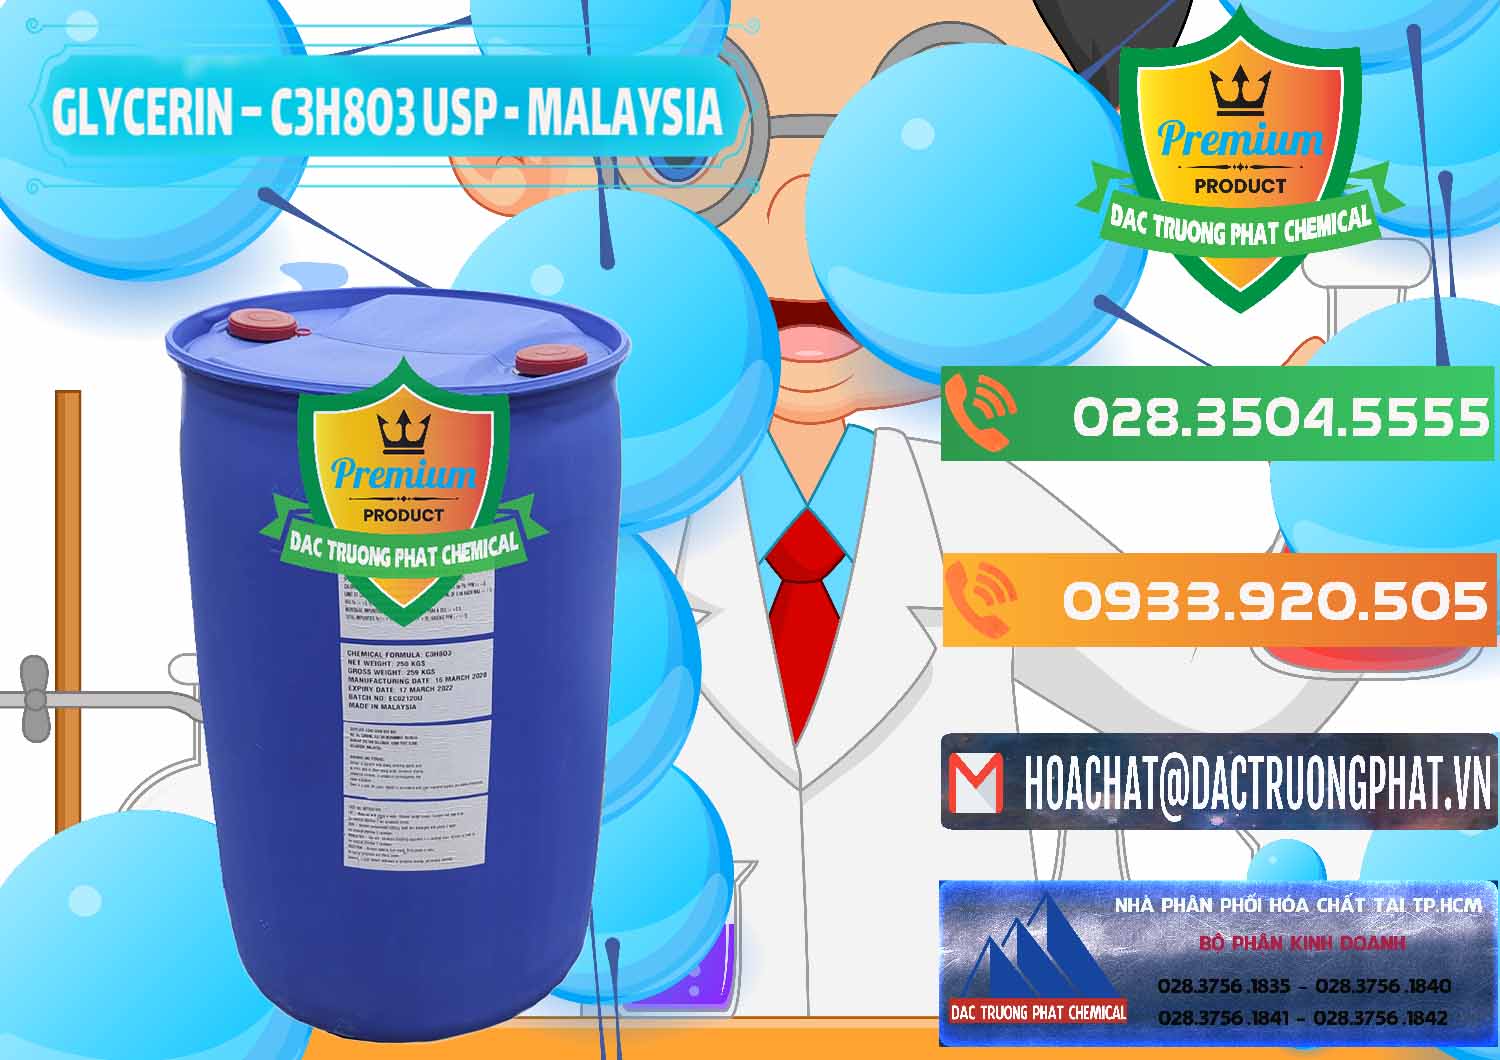 Nơi chuyên phân phối và bán Glycerin – C3H8O3 USP Malaysia - 0233 - Phân phối & bán hóa chất tại TP.HCM - hoachatxulynuoc.com.vn